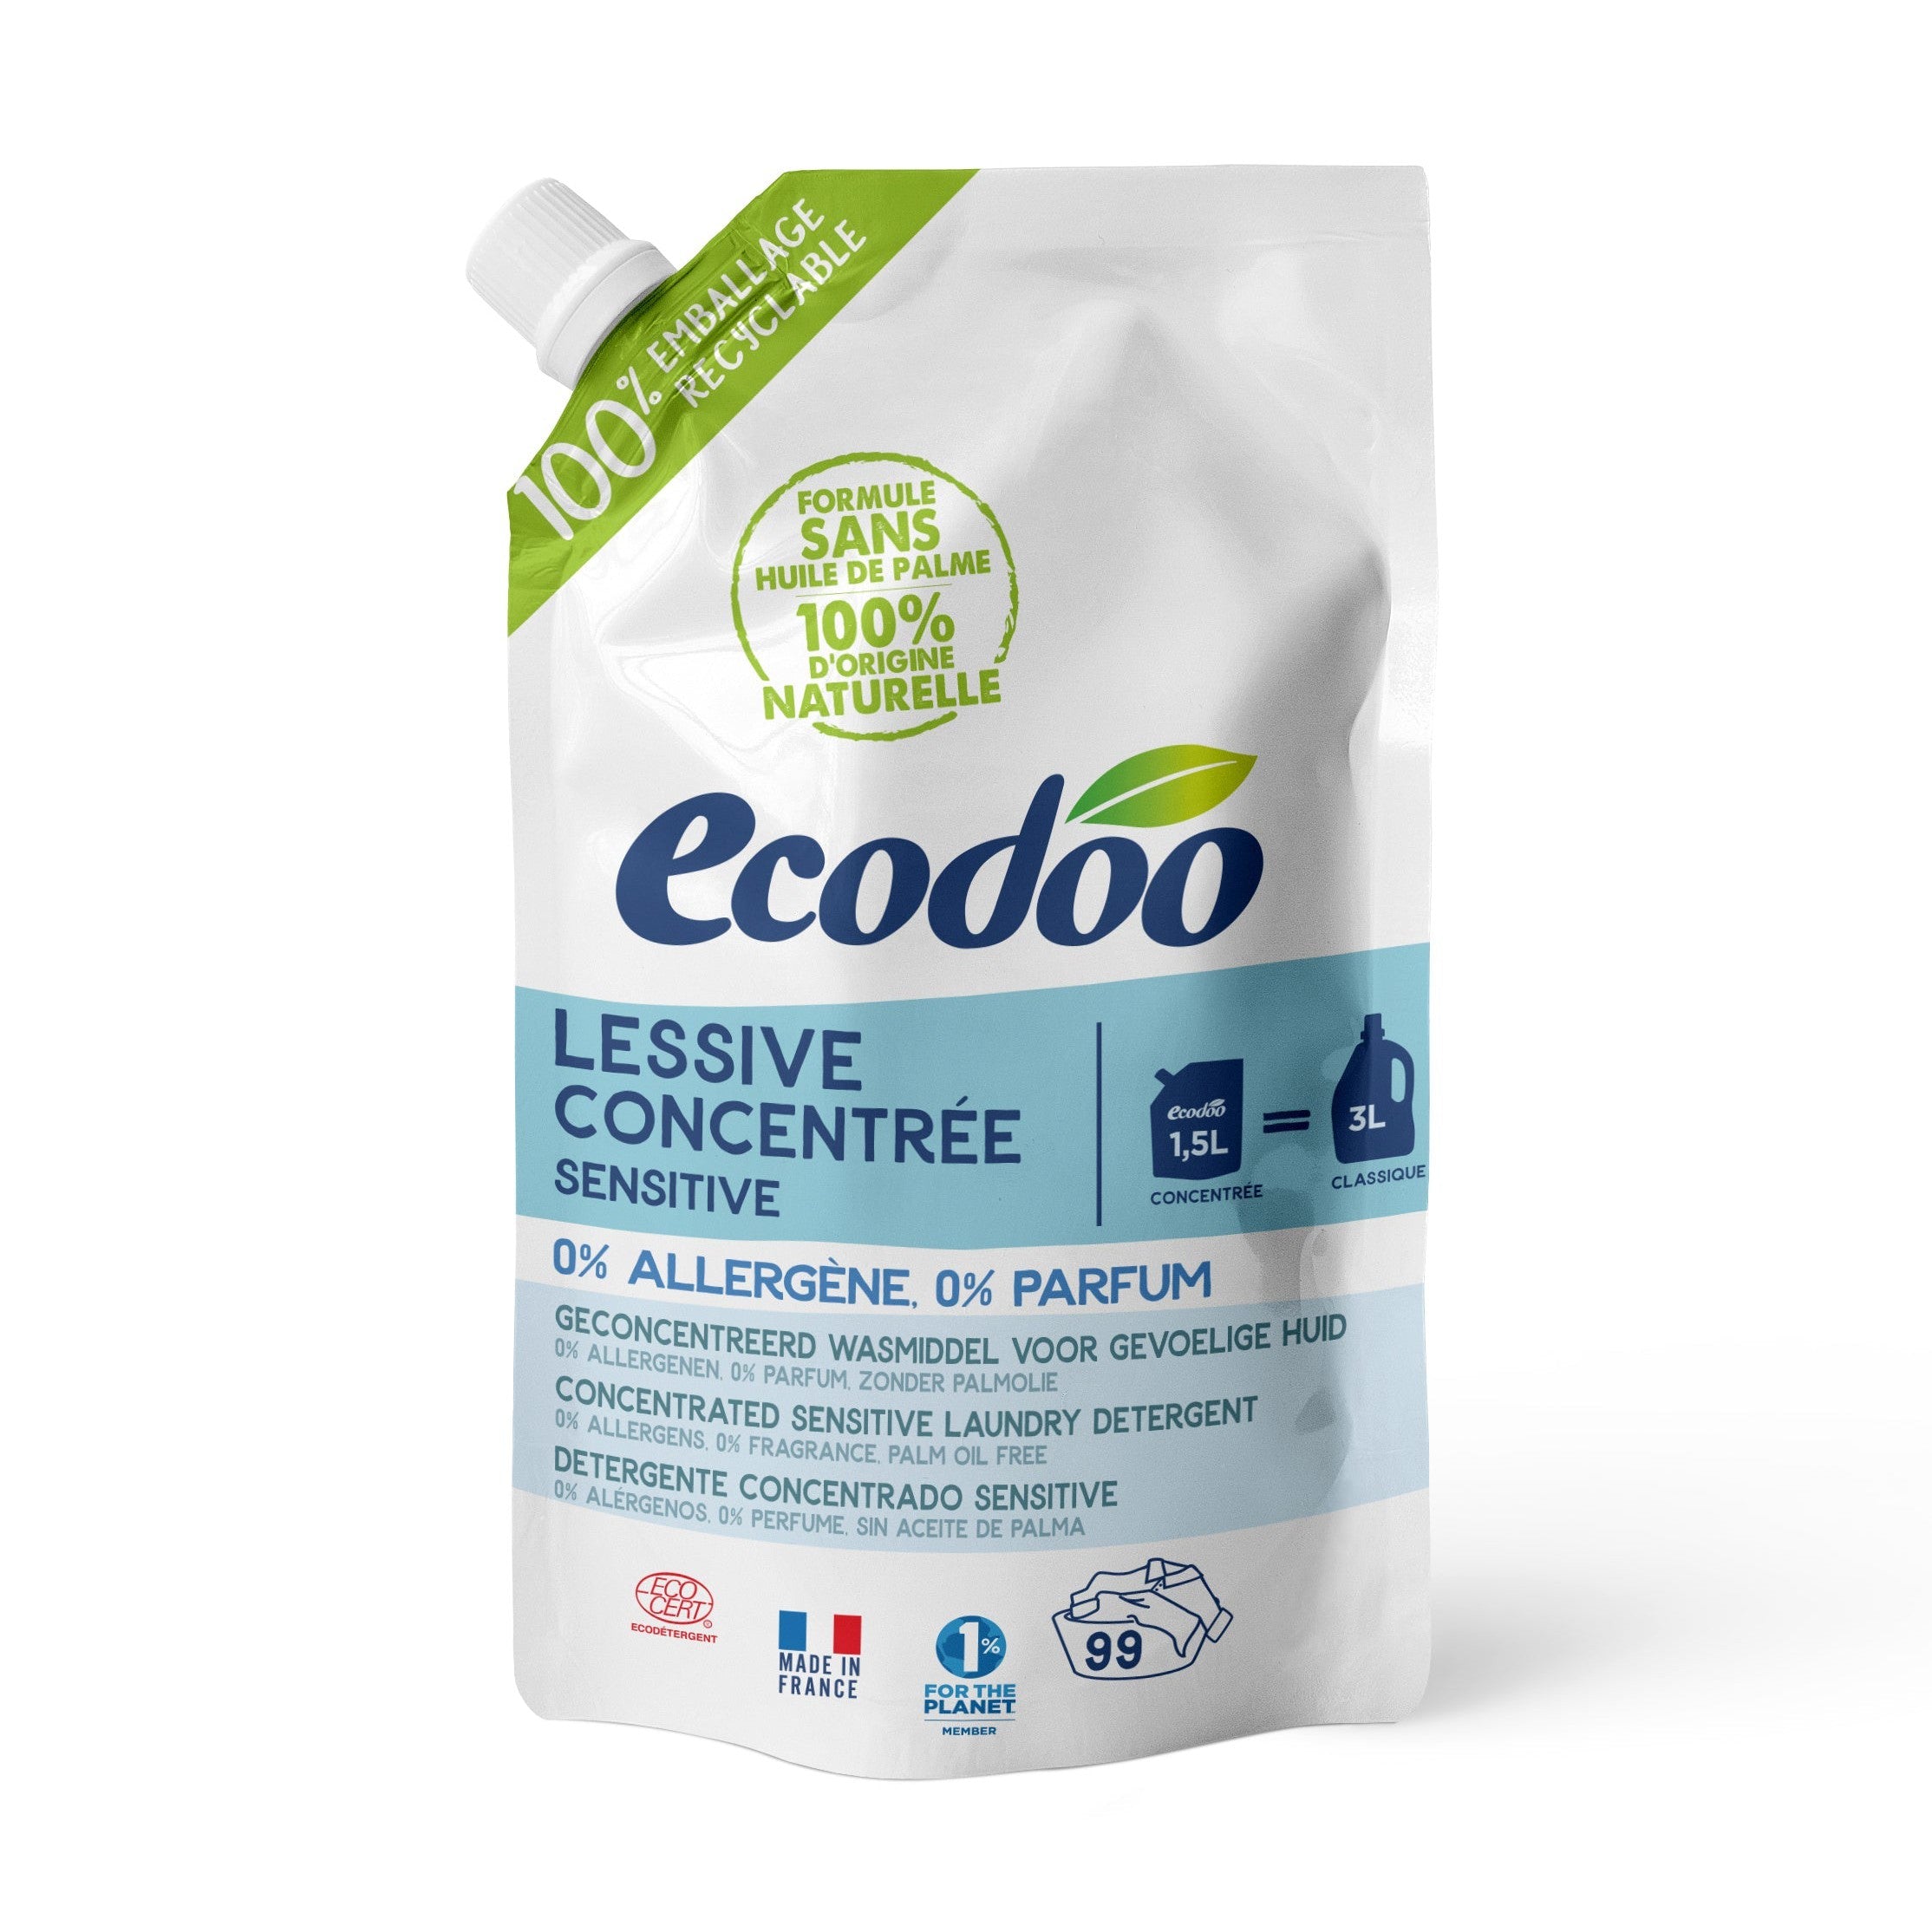 Ecodoo hajusteeton pyykinpesuaine Sensitiv, täyttöpussi